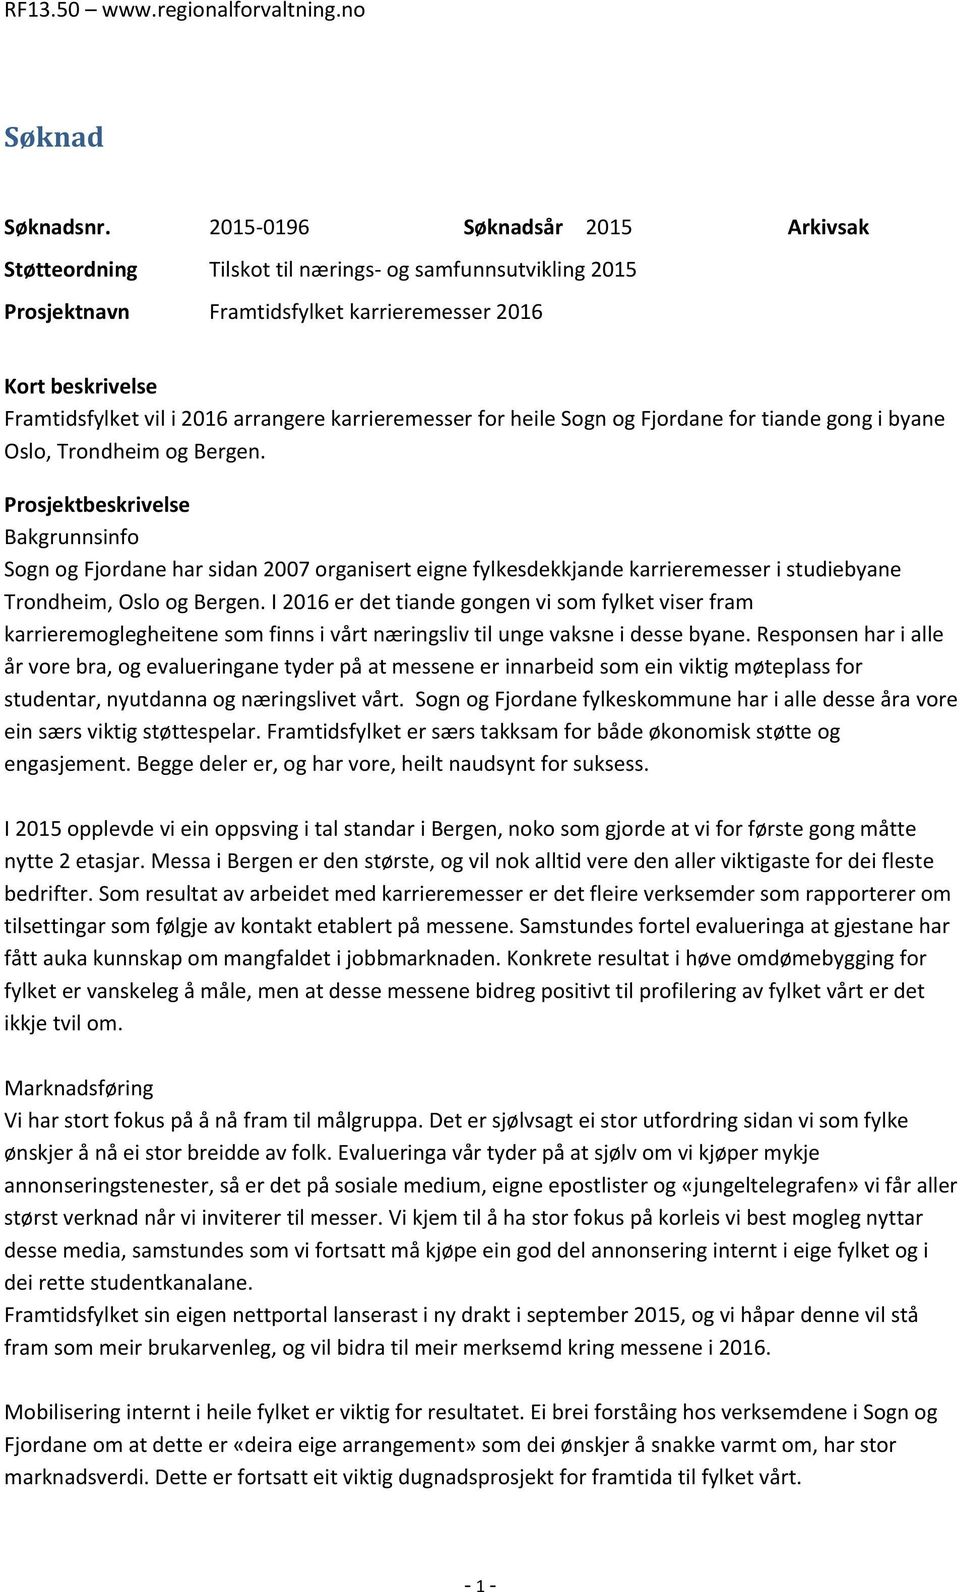 karrieremesser for heile Sogn og Fjordane for tiande gong i byane Oslo, Trondheim og Bergen.